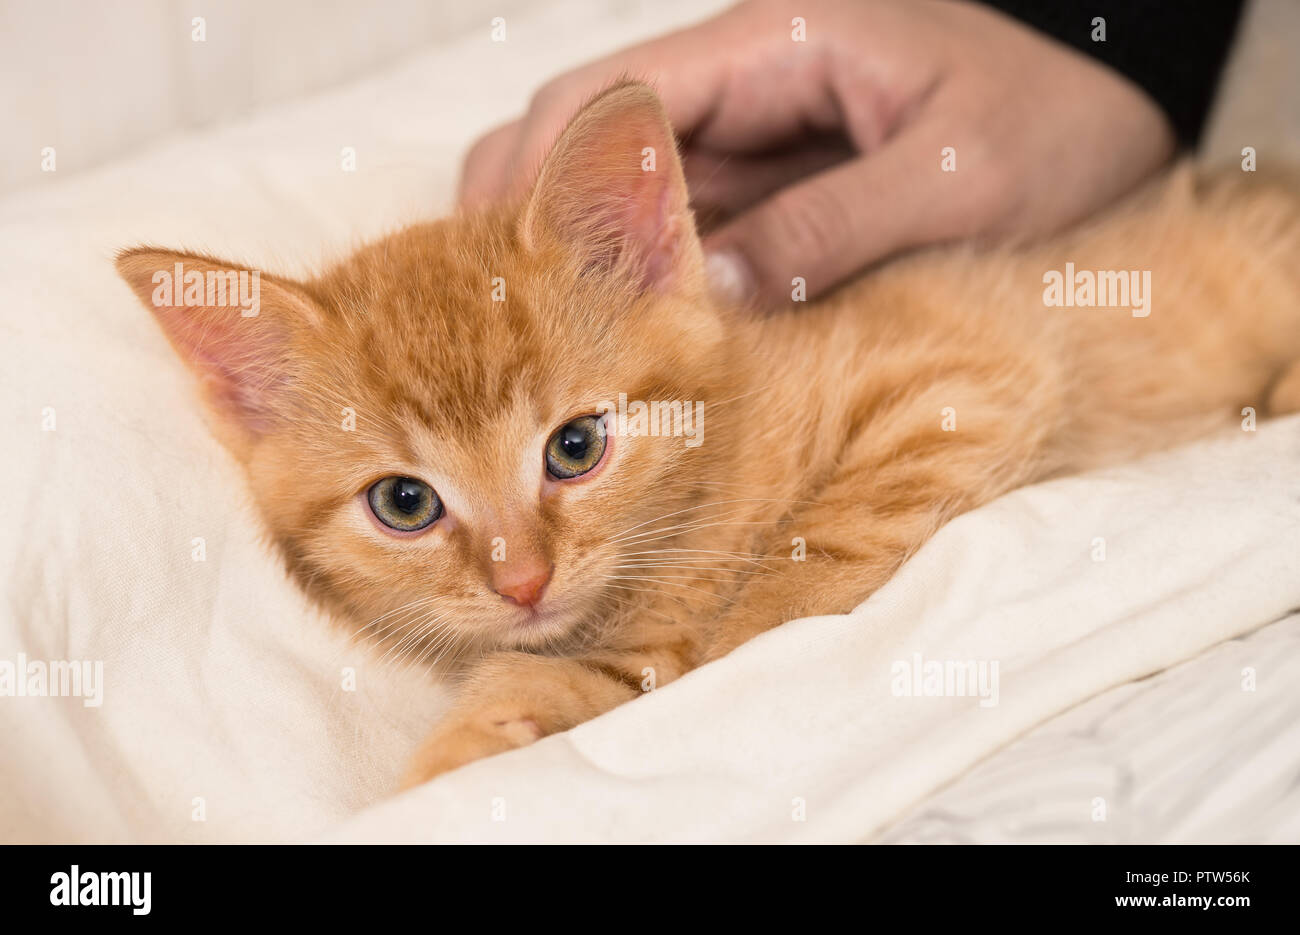 Lindo gatito de jengibre y la mano humana. Gato doméstico ocho semanas de edad. Felis silvestris catus. Caricia de pequeño atigrado kitty. Mullida cama blanca. Dulce pequeña mascota. Foto de stock